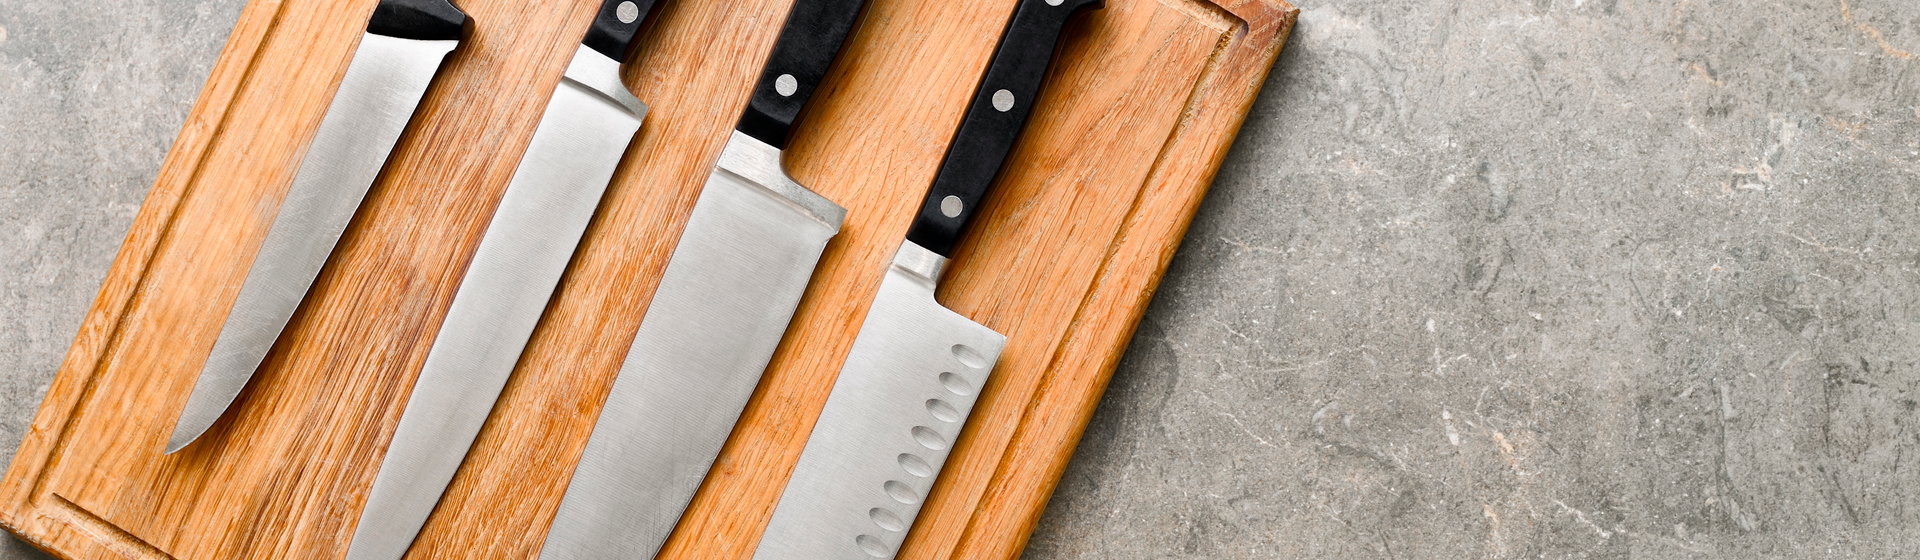 Conheça os tipos de faca de cozinha para tornar o seu dia mais fácil